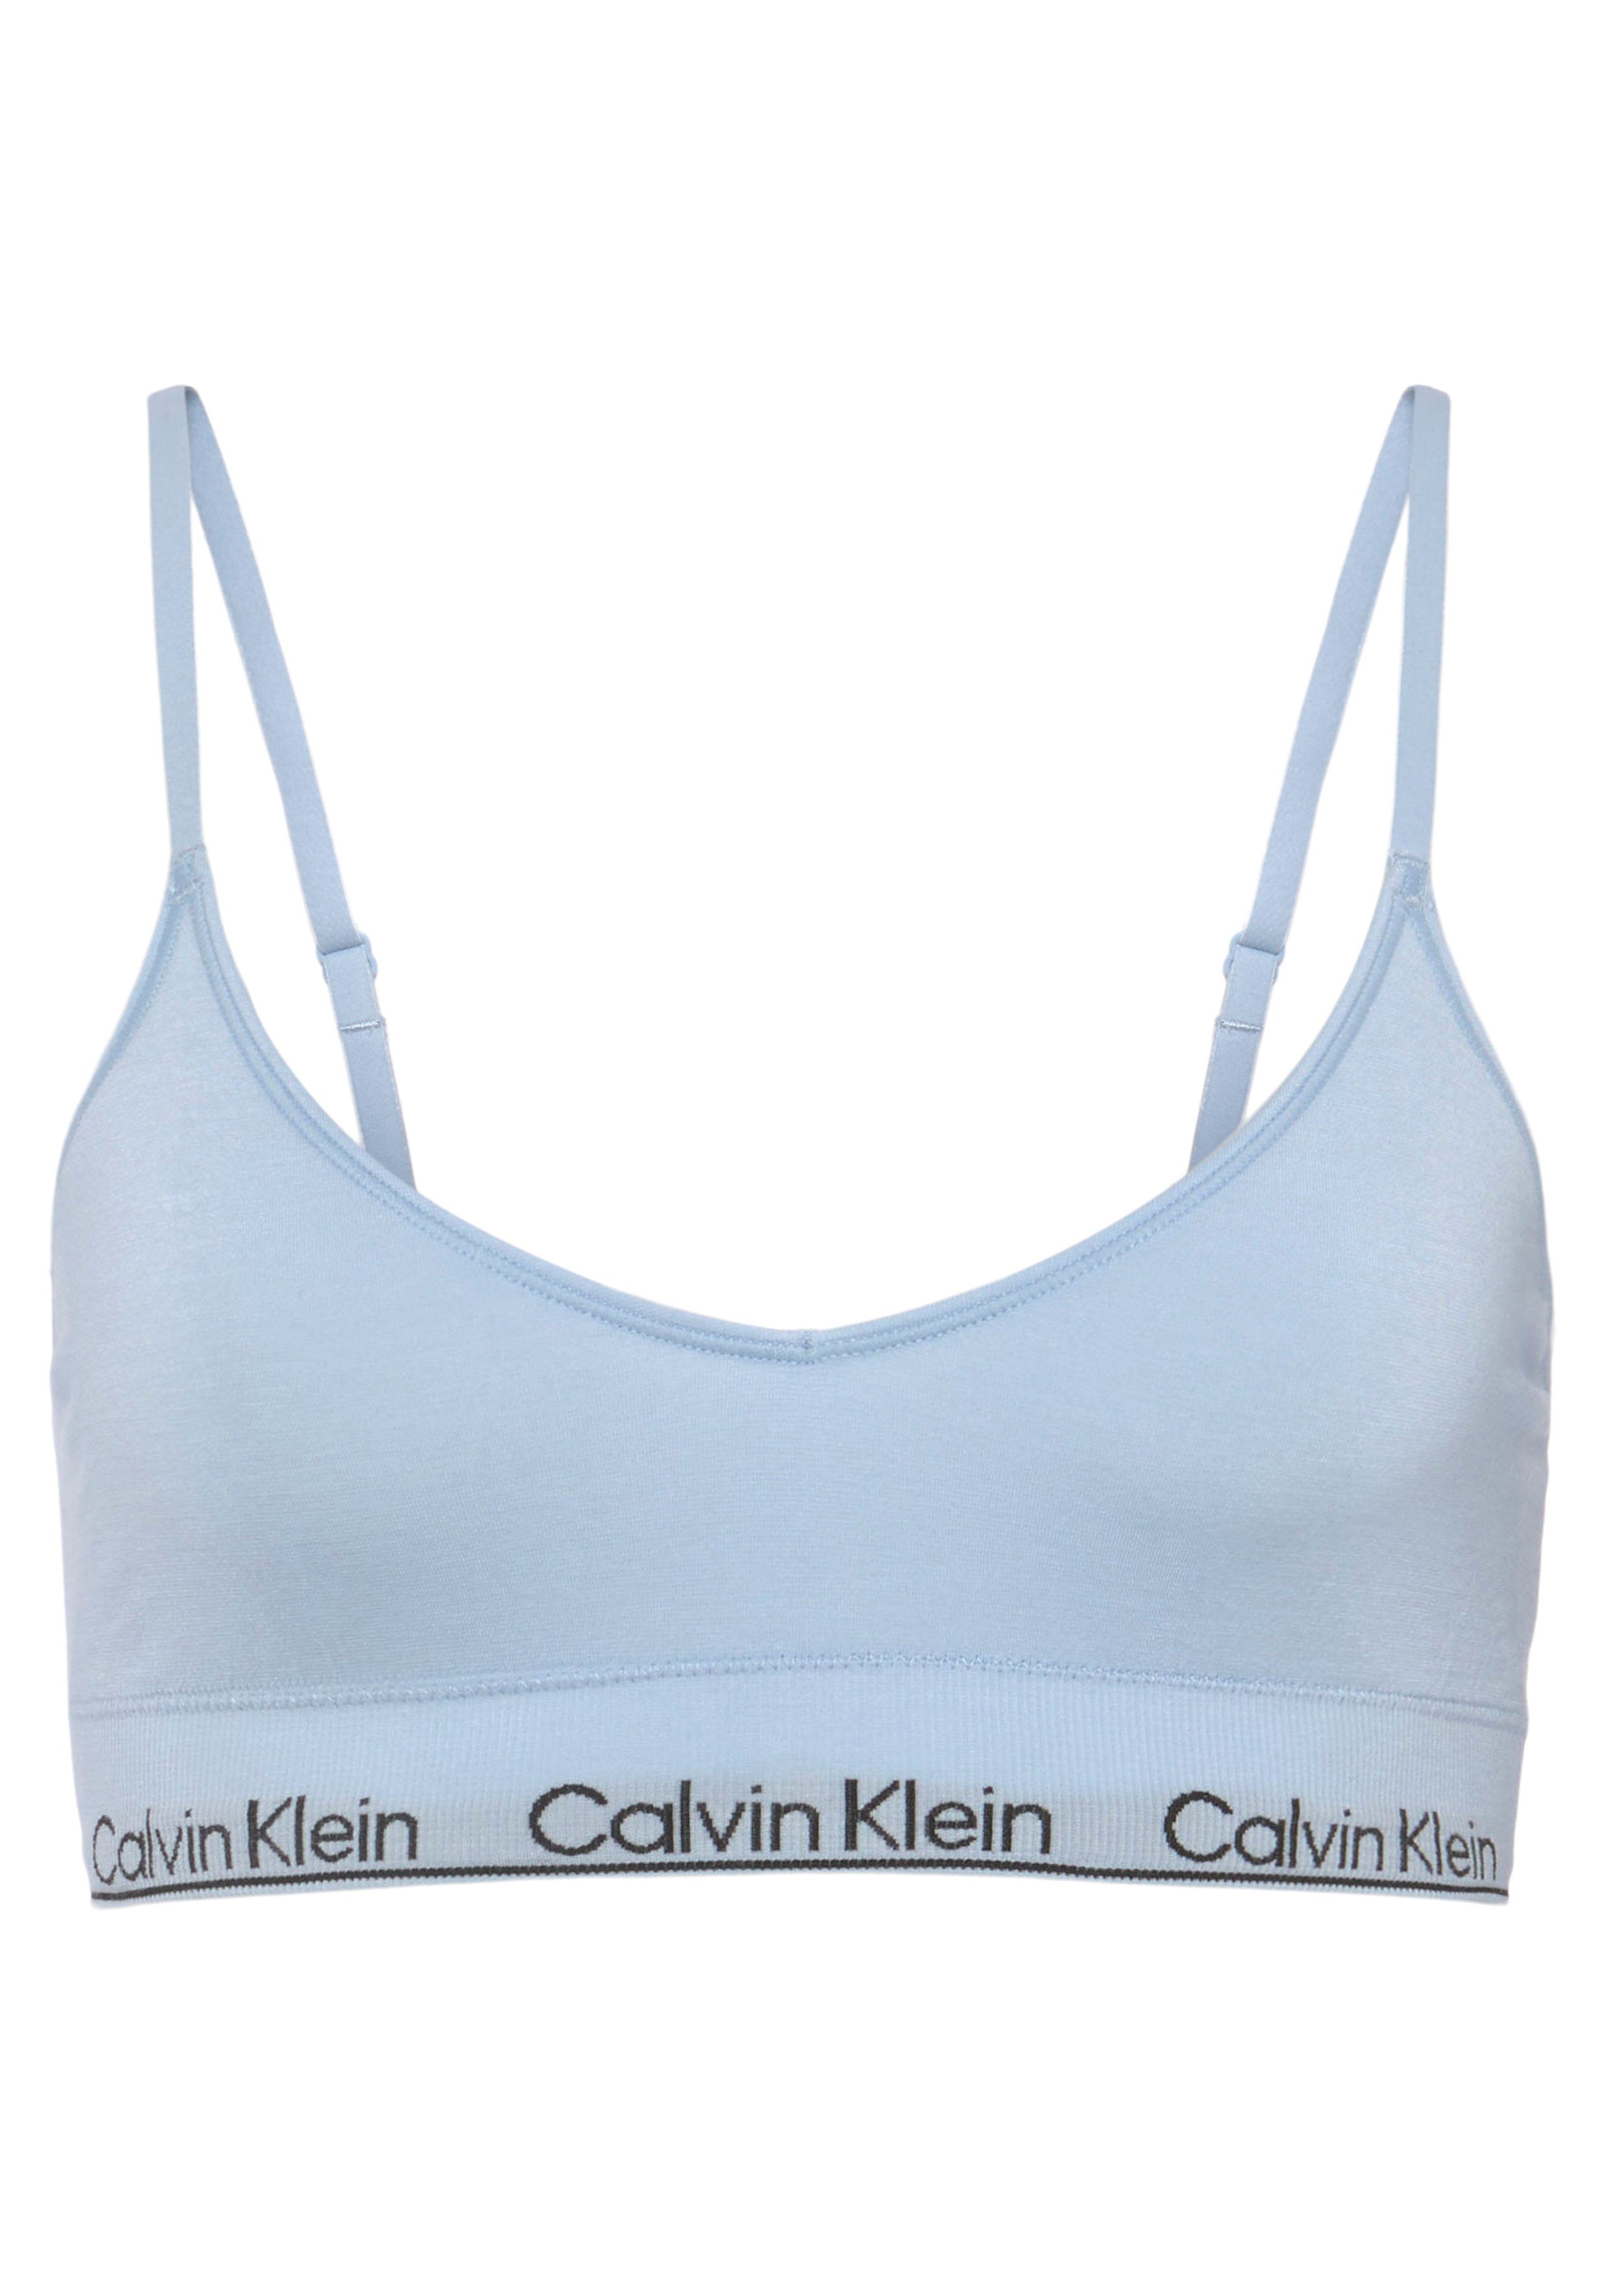 Calvin Klein Underwear Triangel-BH LGHT LINED TRIANGLE mit CK-Logoschriftzug hellblau | Triangel-BHs